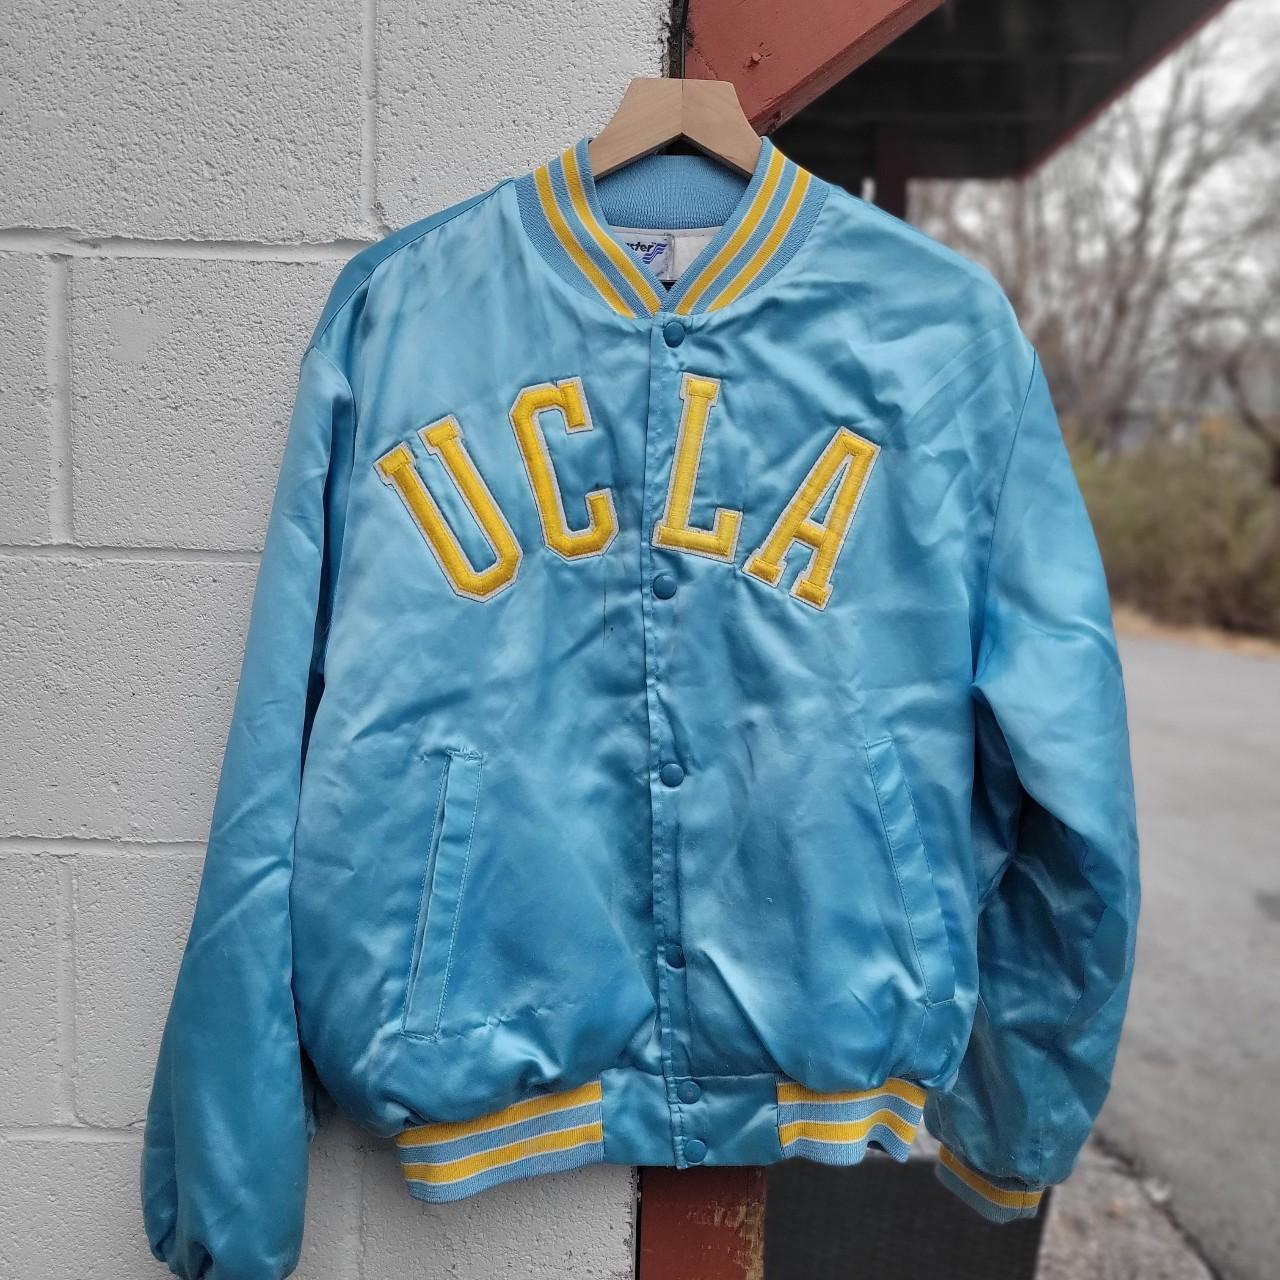 Vintage 80s UCLA Bruins bomber satin jacket. Super... - Depop